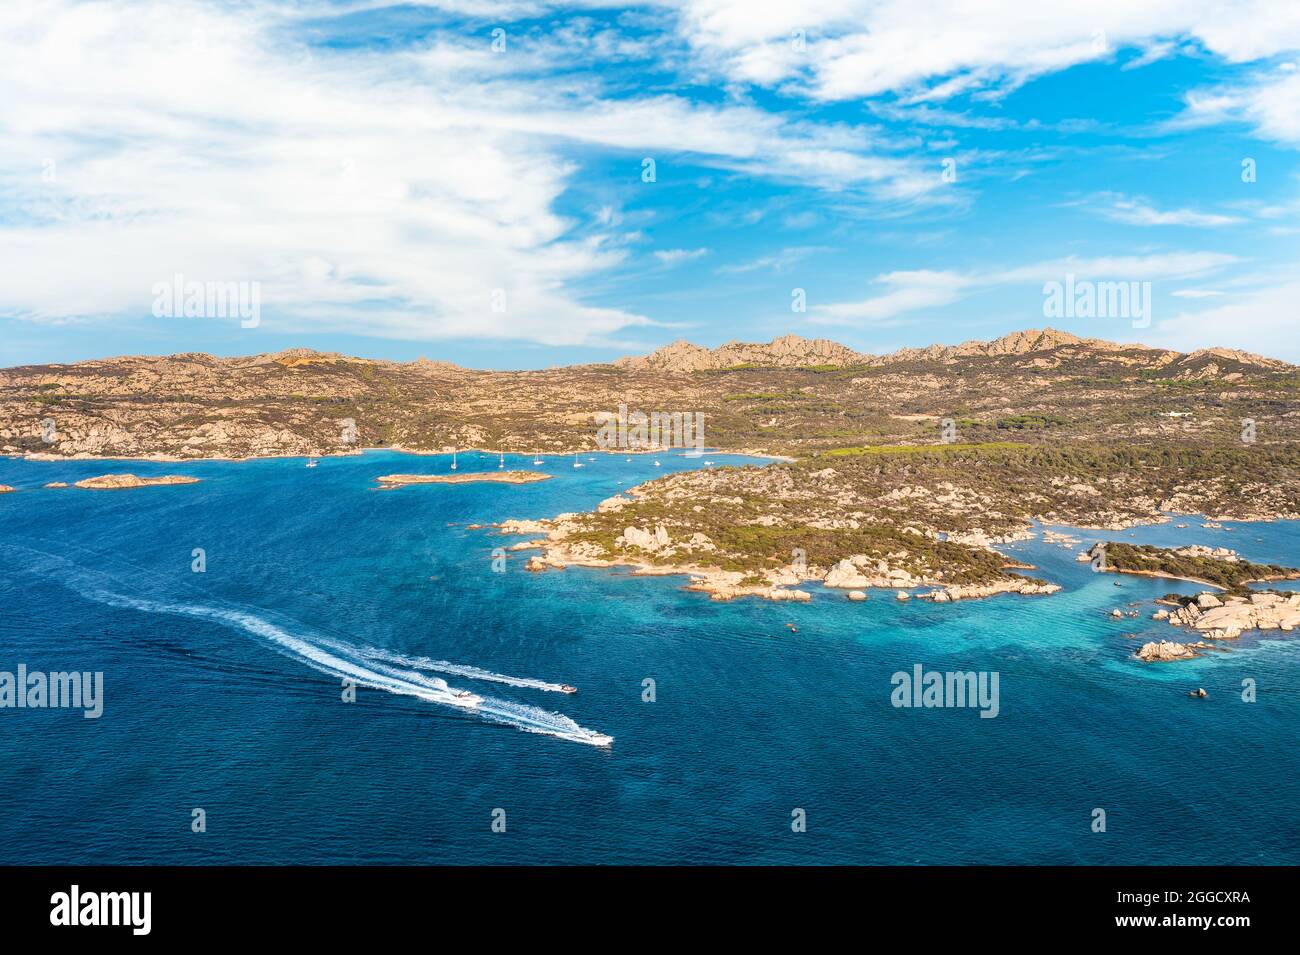 Blick von oben, atemberaubende Luftaufnahme des Archipels von La Maddalena mit seinen türkisfarbenen, kristallklaren Wasserbuchten. Caprera Island in der Ferne. Stockfoto